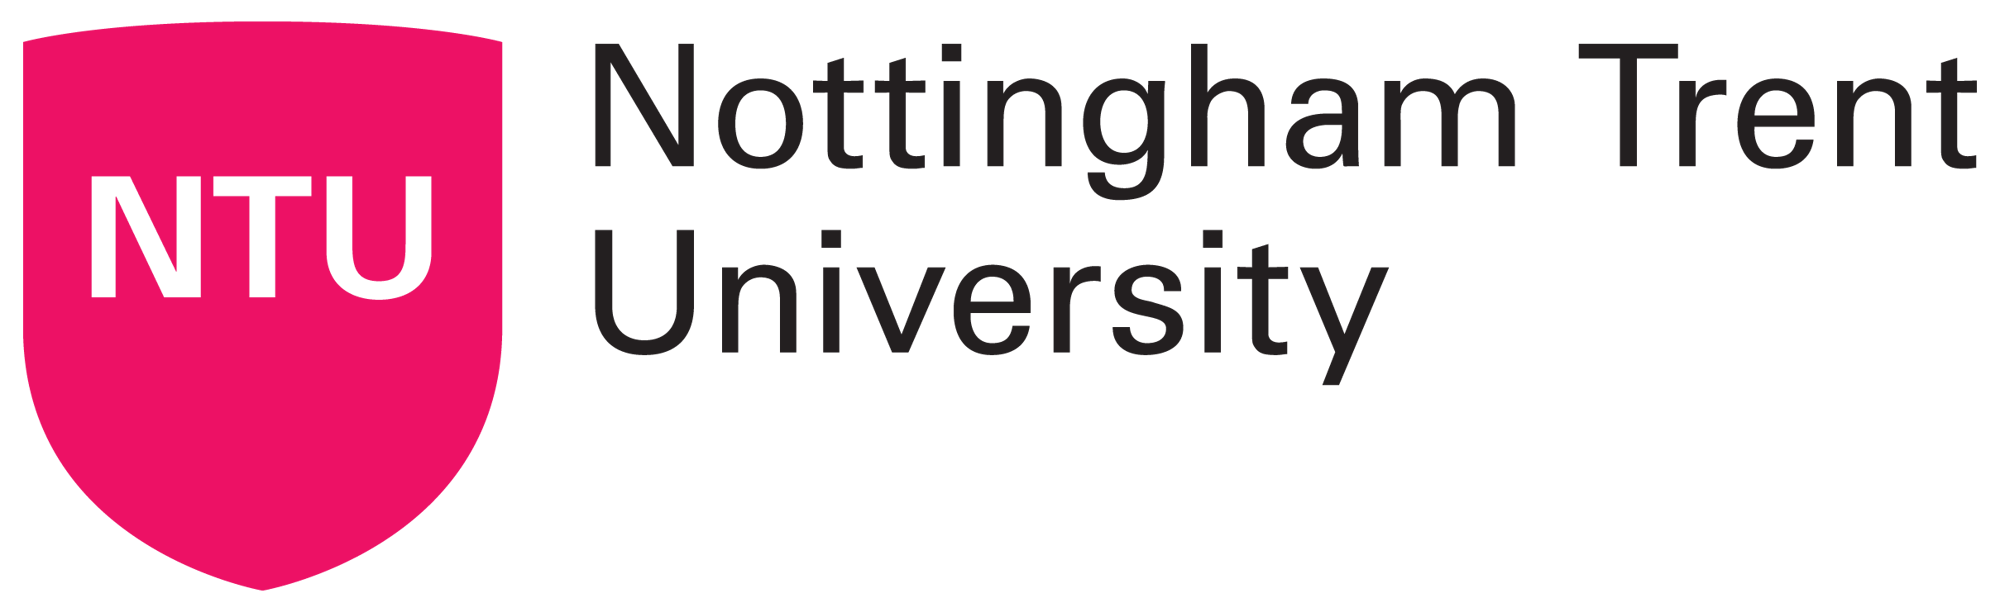 Nottingham-Trent-University-logo-2